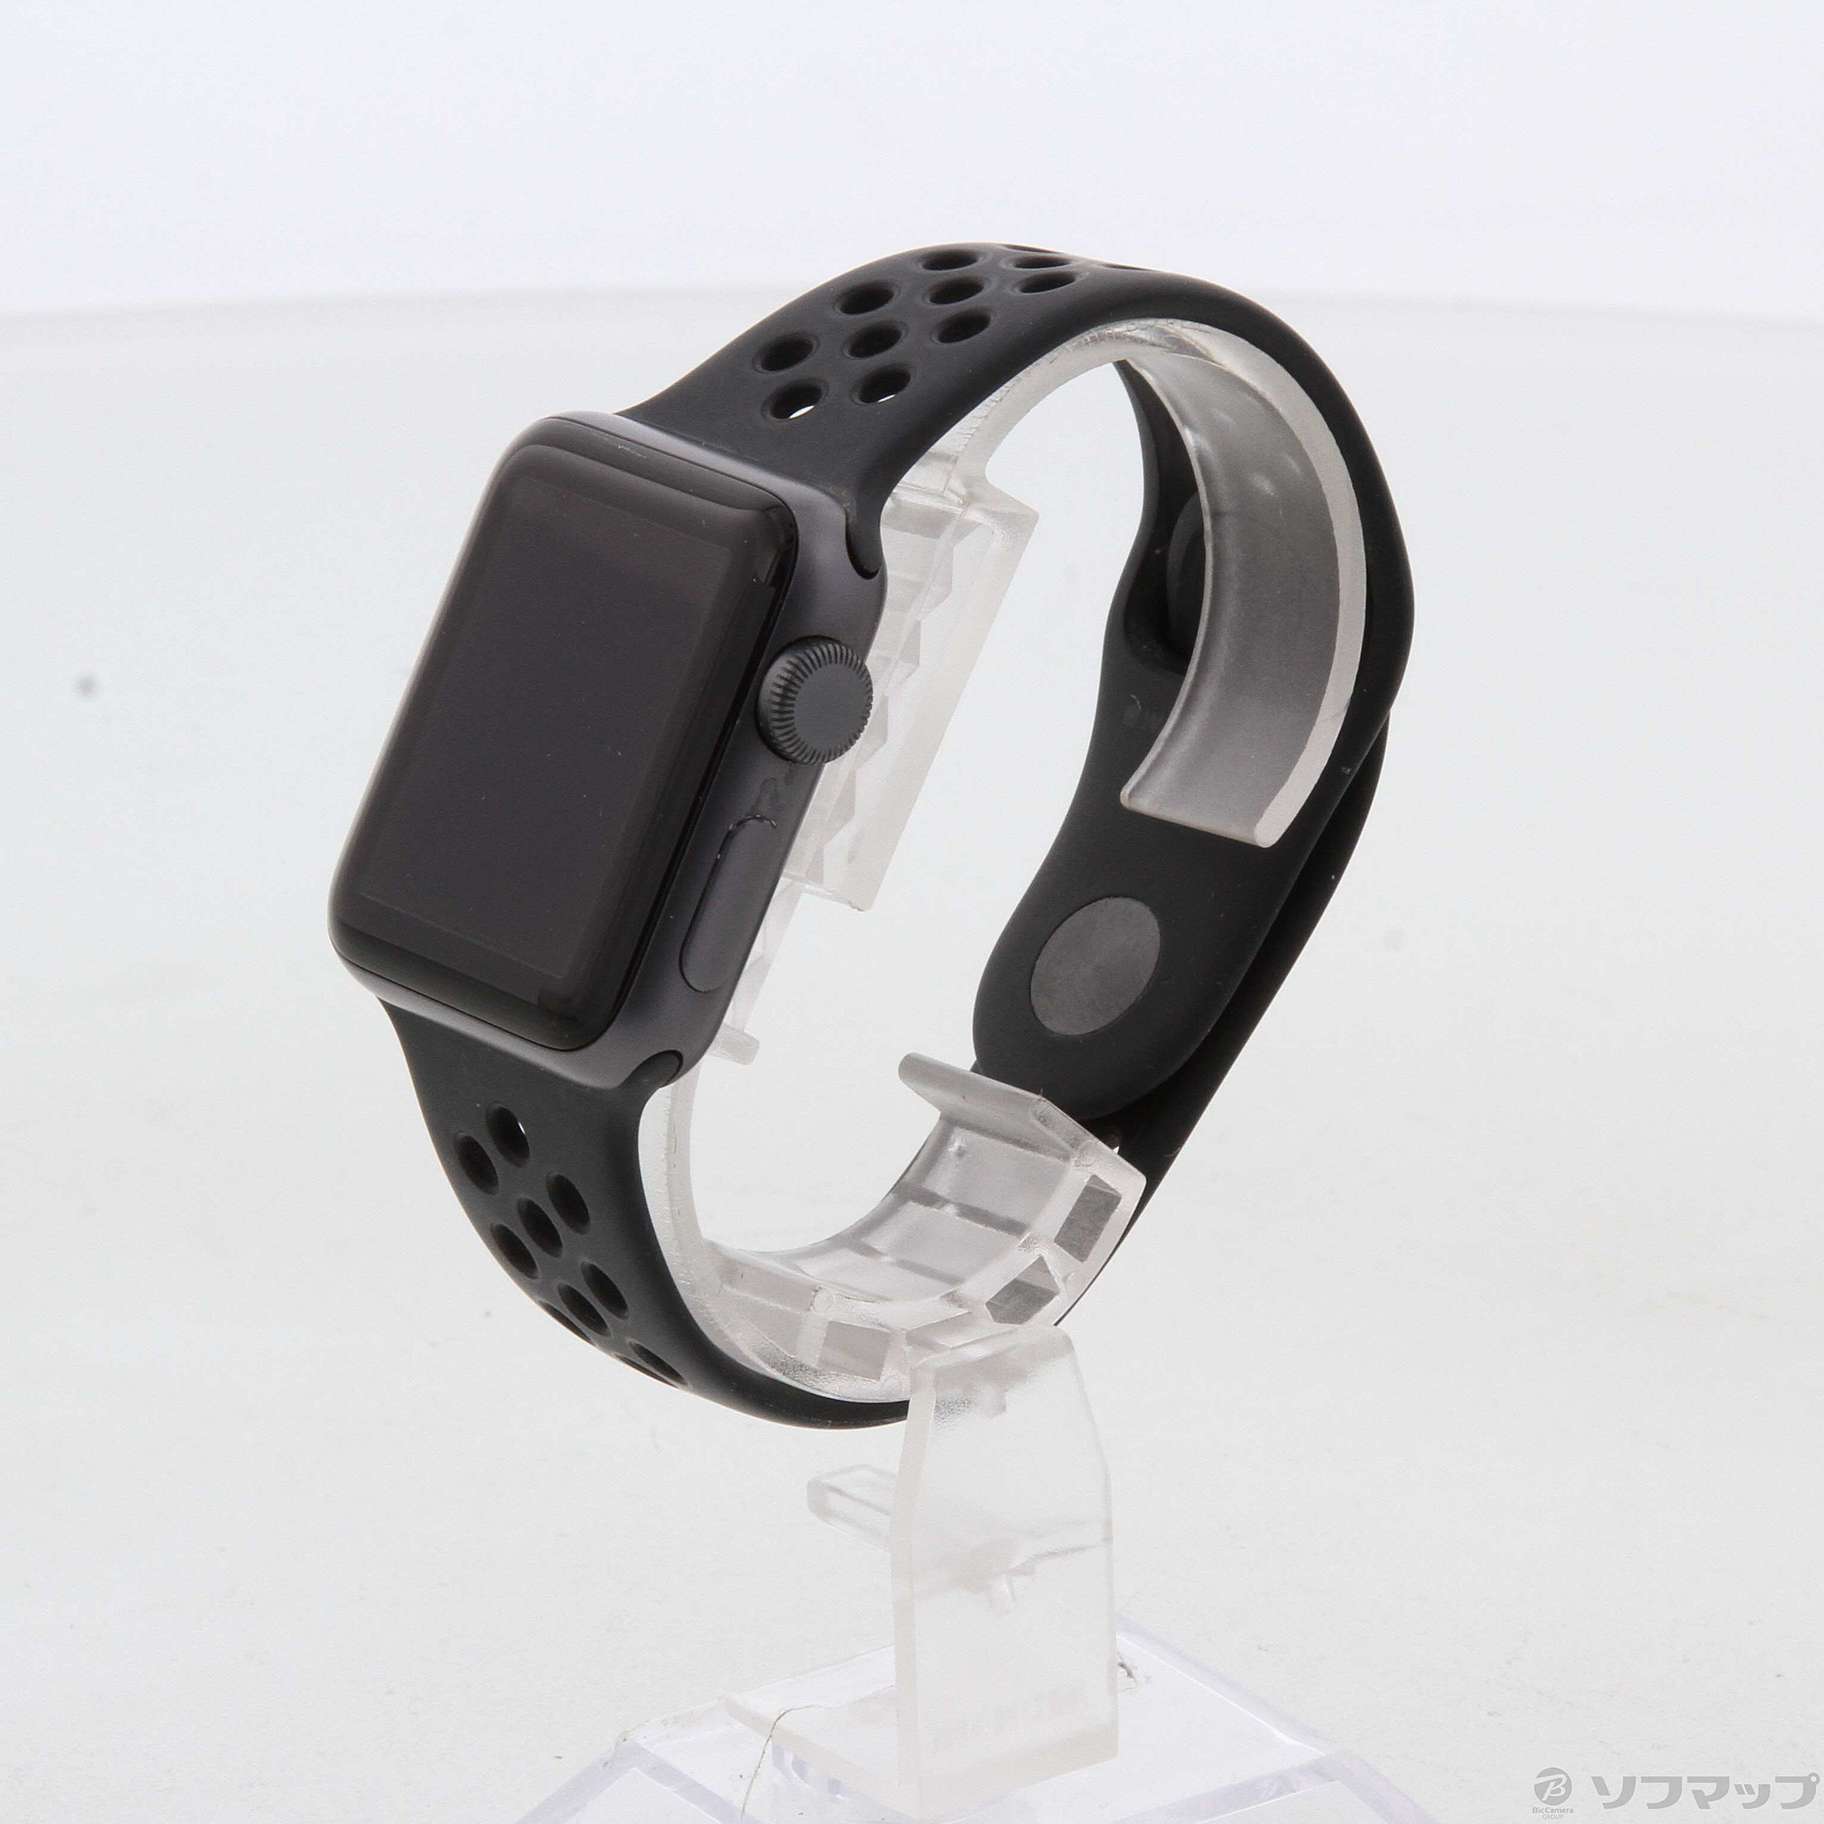 セール対象品 Apple Watch Series 2 Nike+ 38mm スペースグレイアルミニウムケース  アンスラサイト／ブラックNikeスポーツバンド